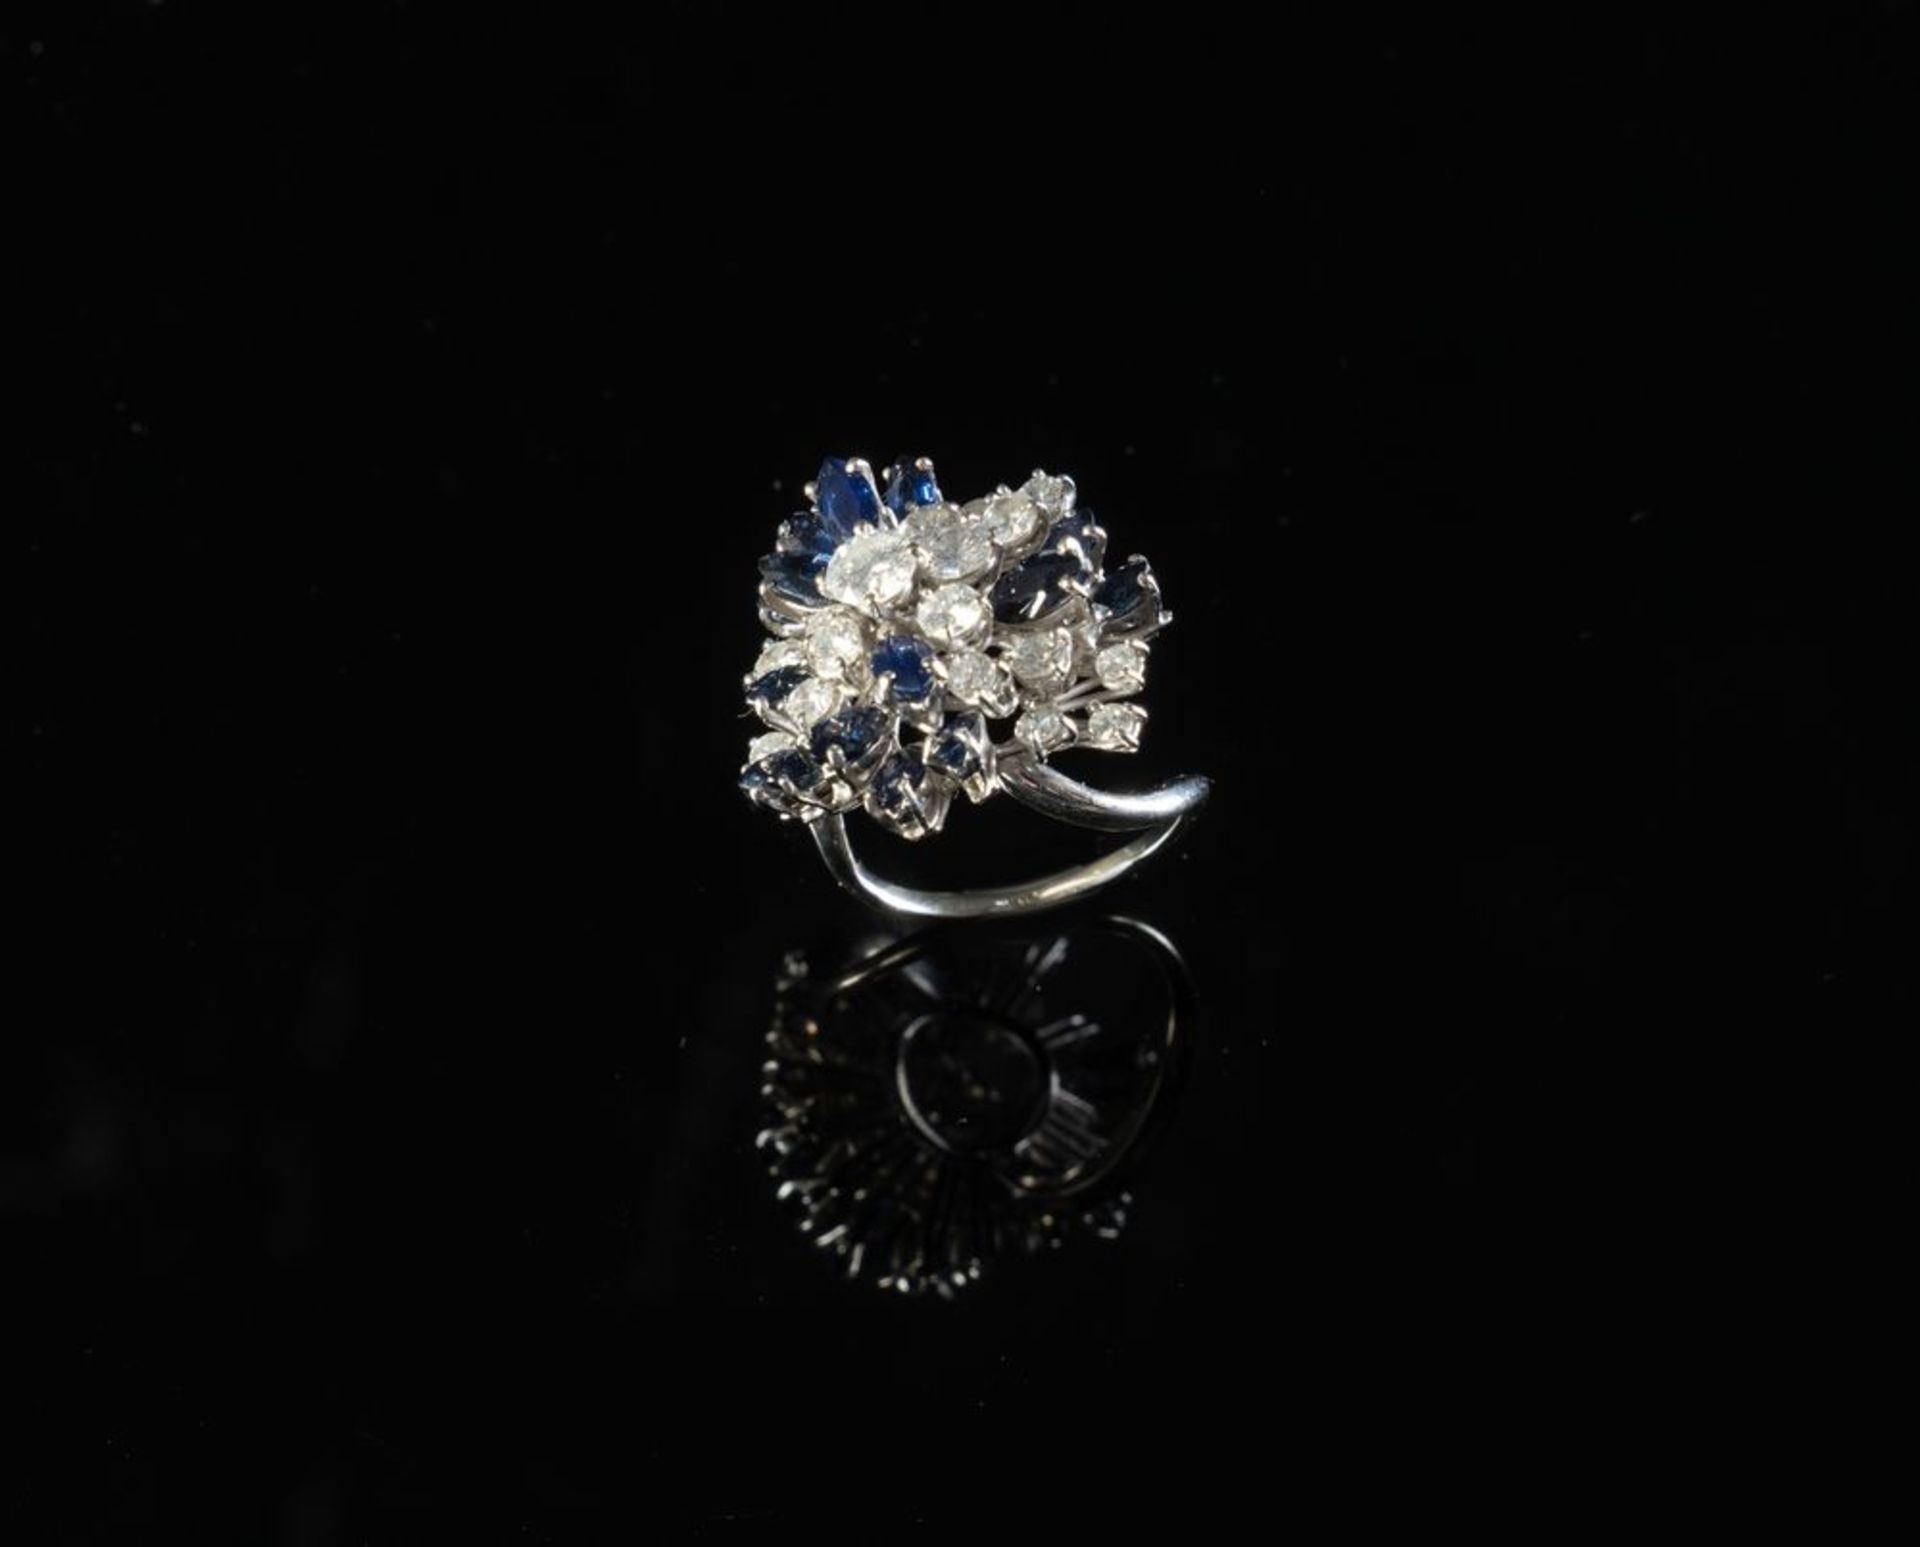 ANELLO IN ORO BIANCO CON DIAMANTI E ZAFFIRI Anello in oro bianco 18k con diamanti taglio brillante r - Image 3 of 5